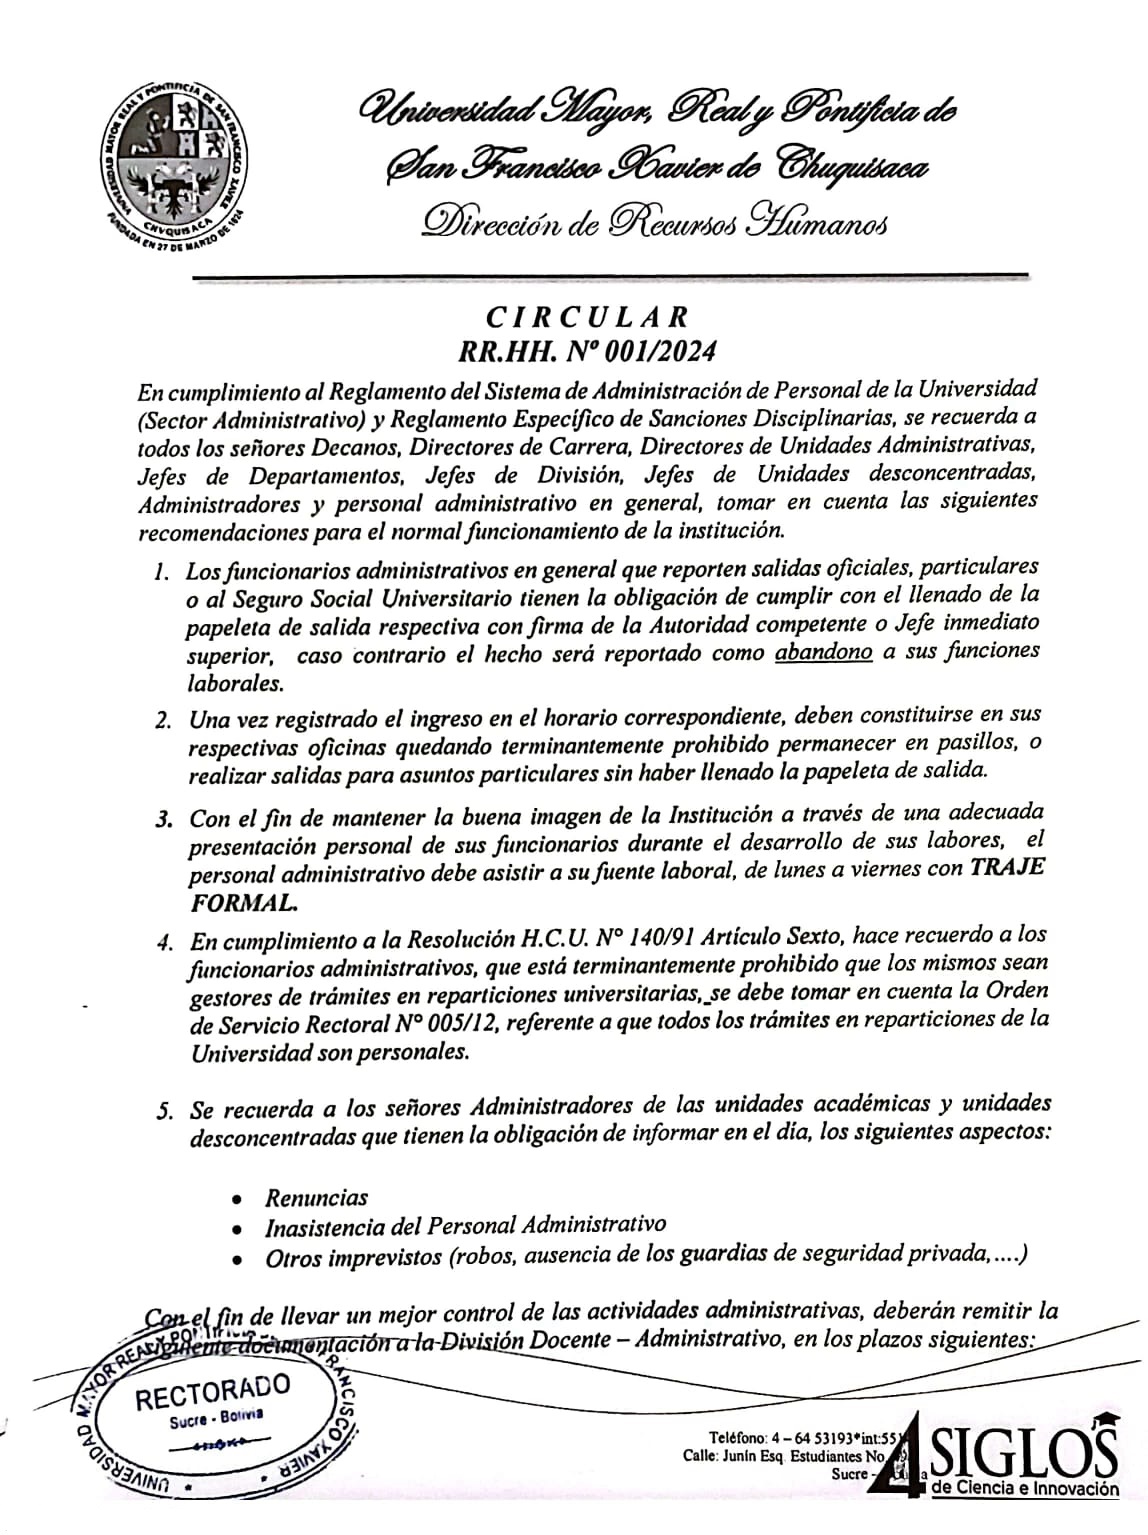 ORDEN DE SERVICIO RR.HH. Nº 001/2024 P1, CUMPLIMIENTO DEL REGLAMENTO DEL SISTEMA DE ADM. DE PERSONAL.